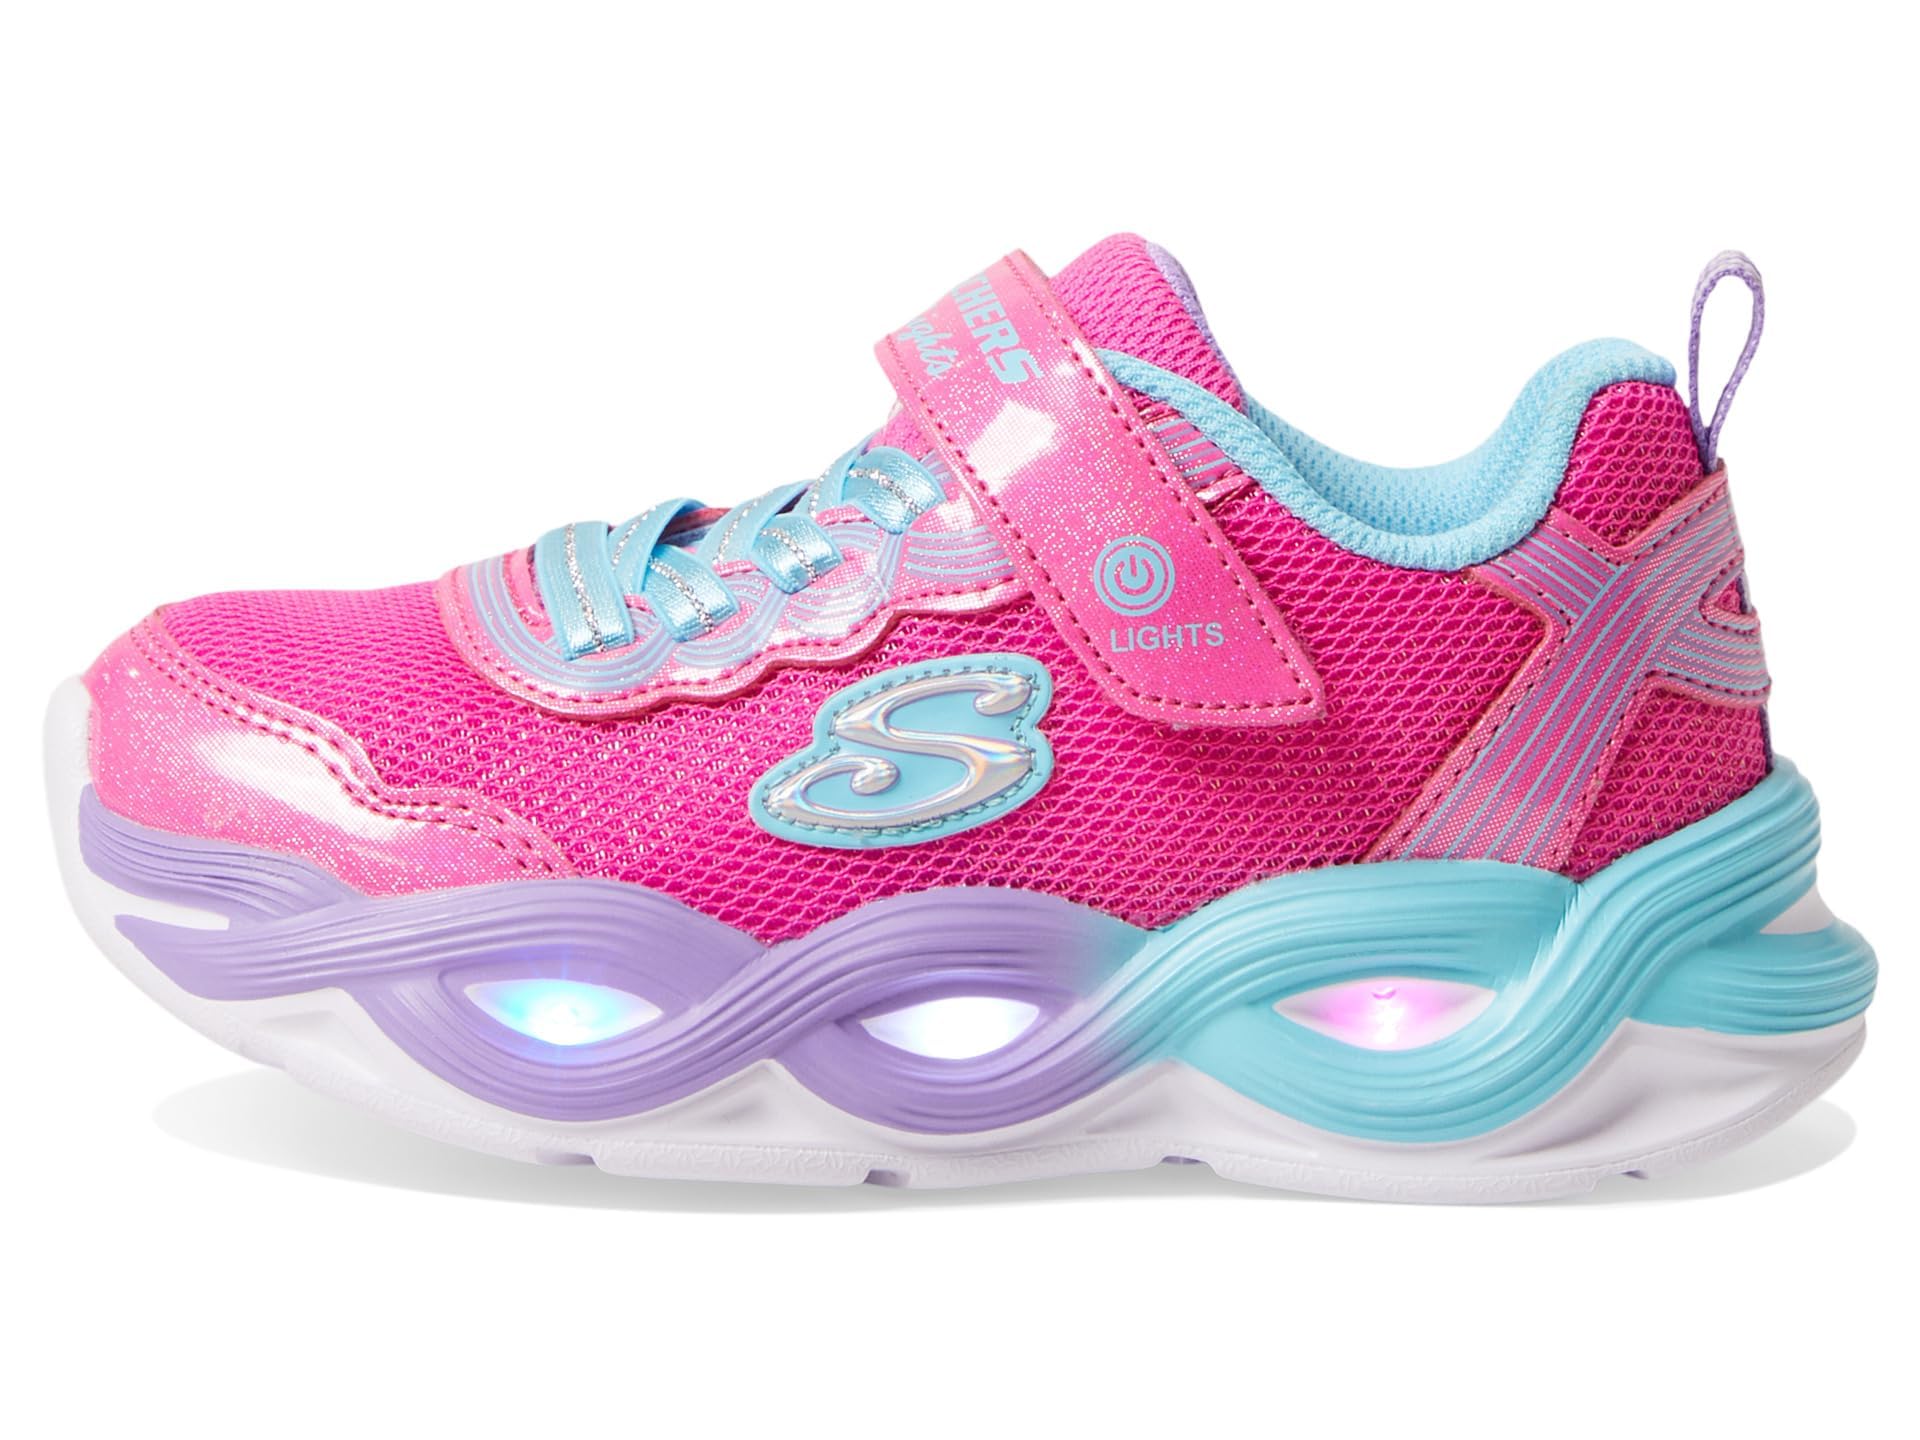 Skechers Girls Twisty Glow Sneaker, Hot Pink/Multi, 11 Little Kid